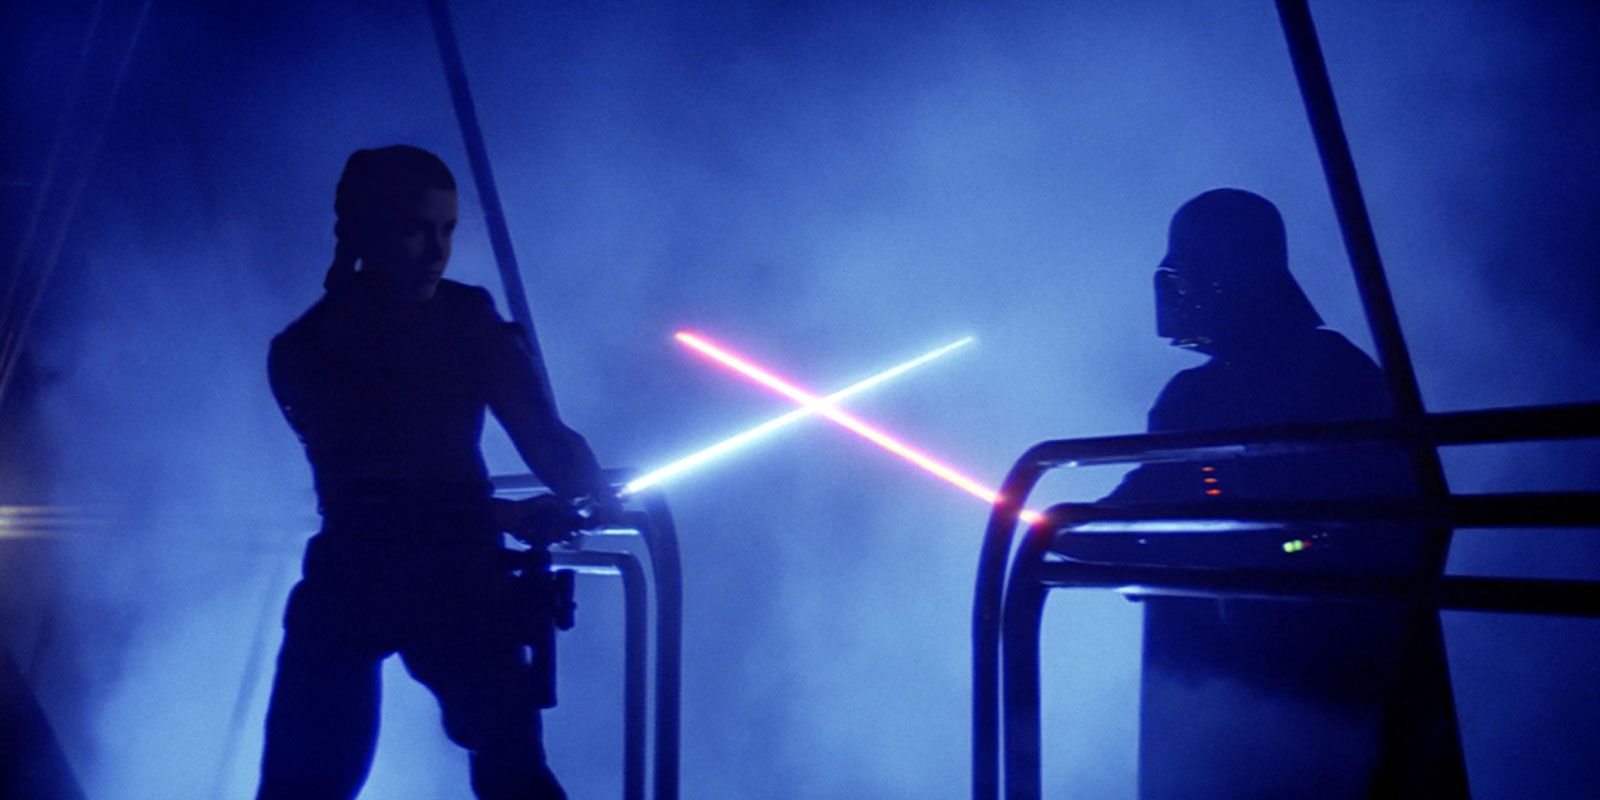 Leia Skywalker in a lightsaber duel against Darth Vader.